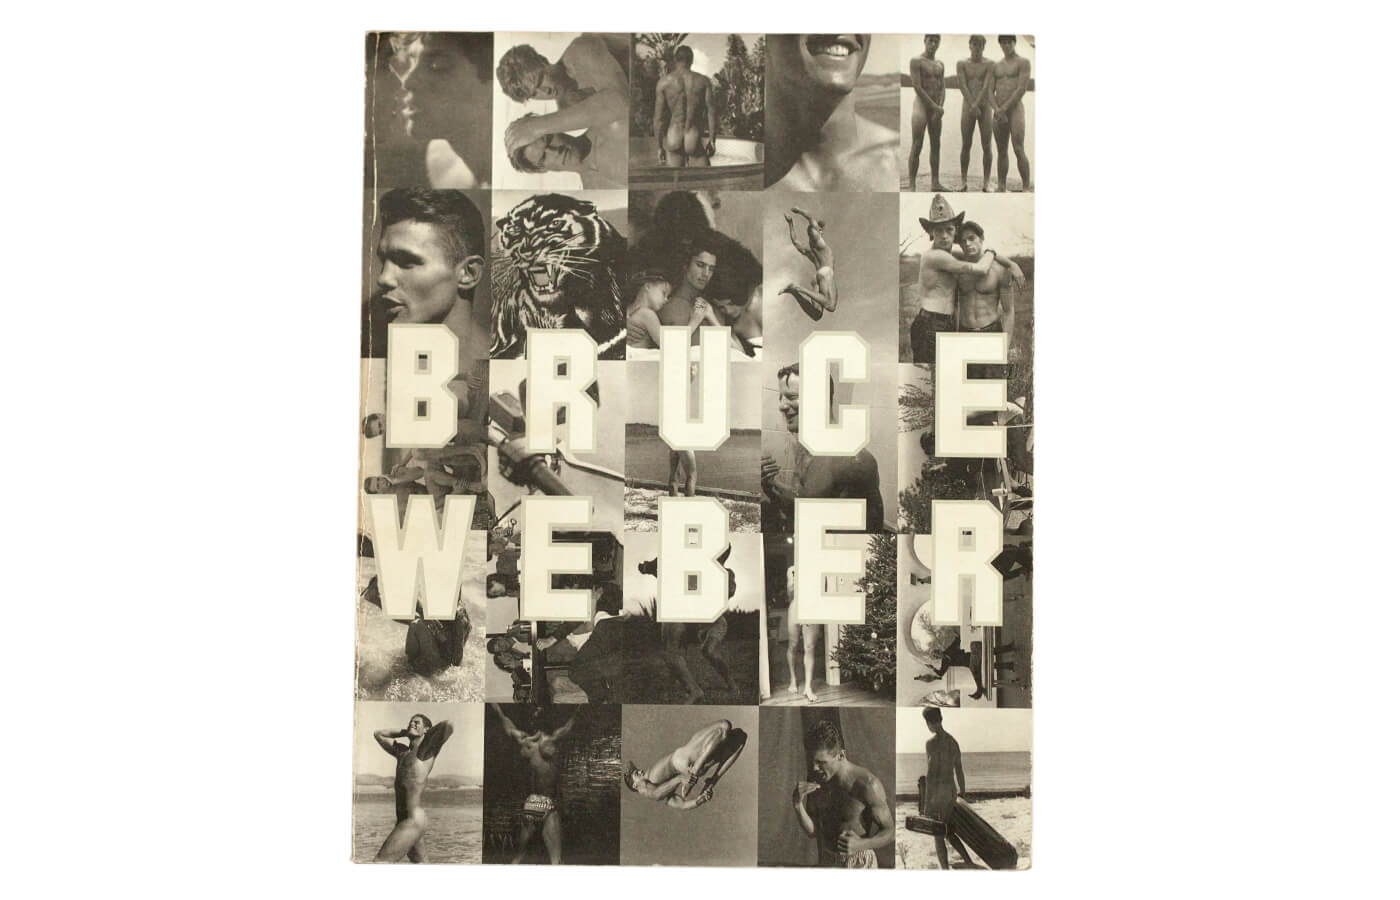 Bruce Weber